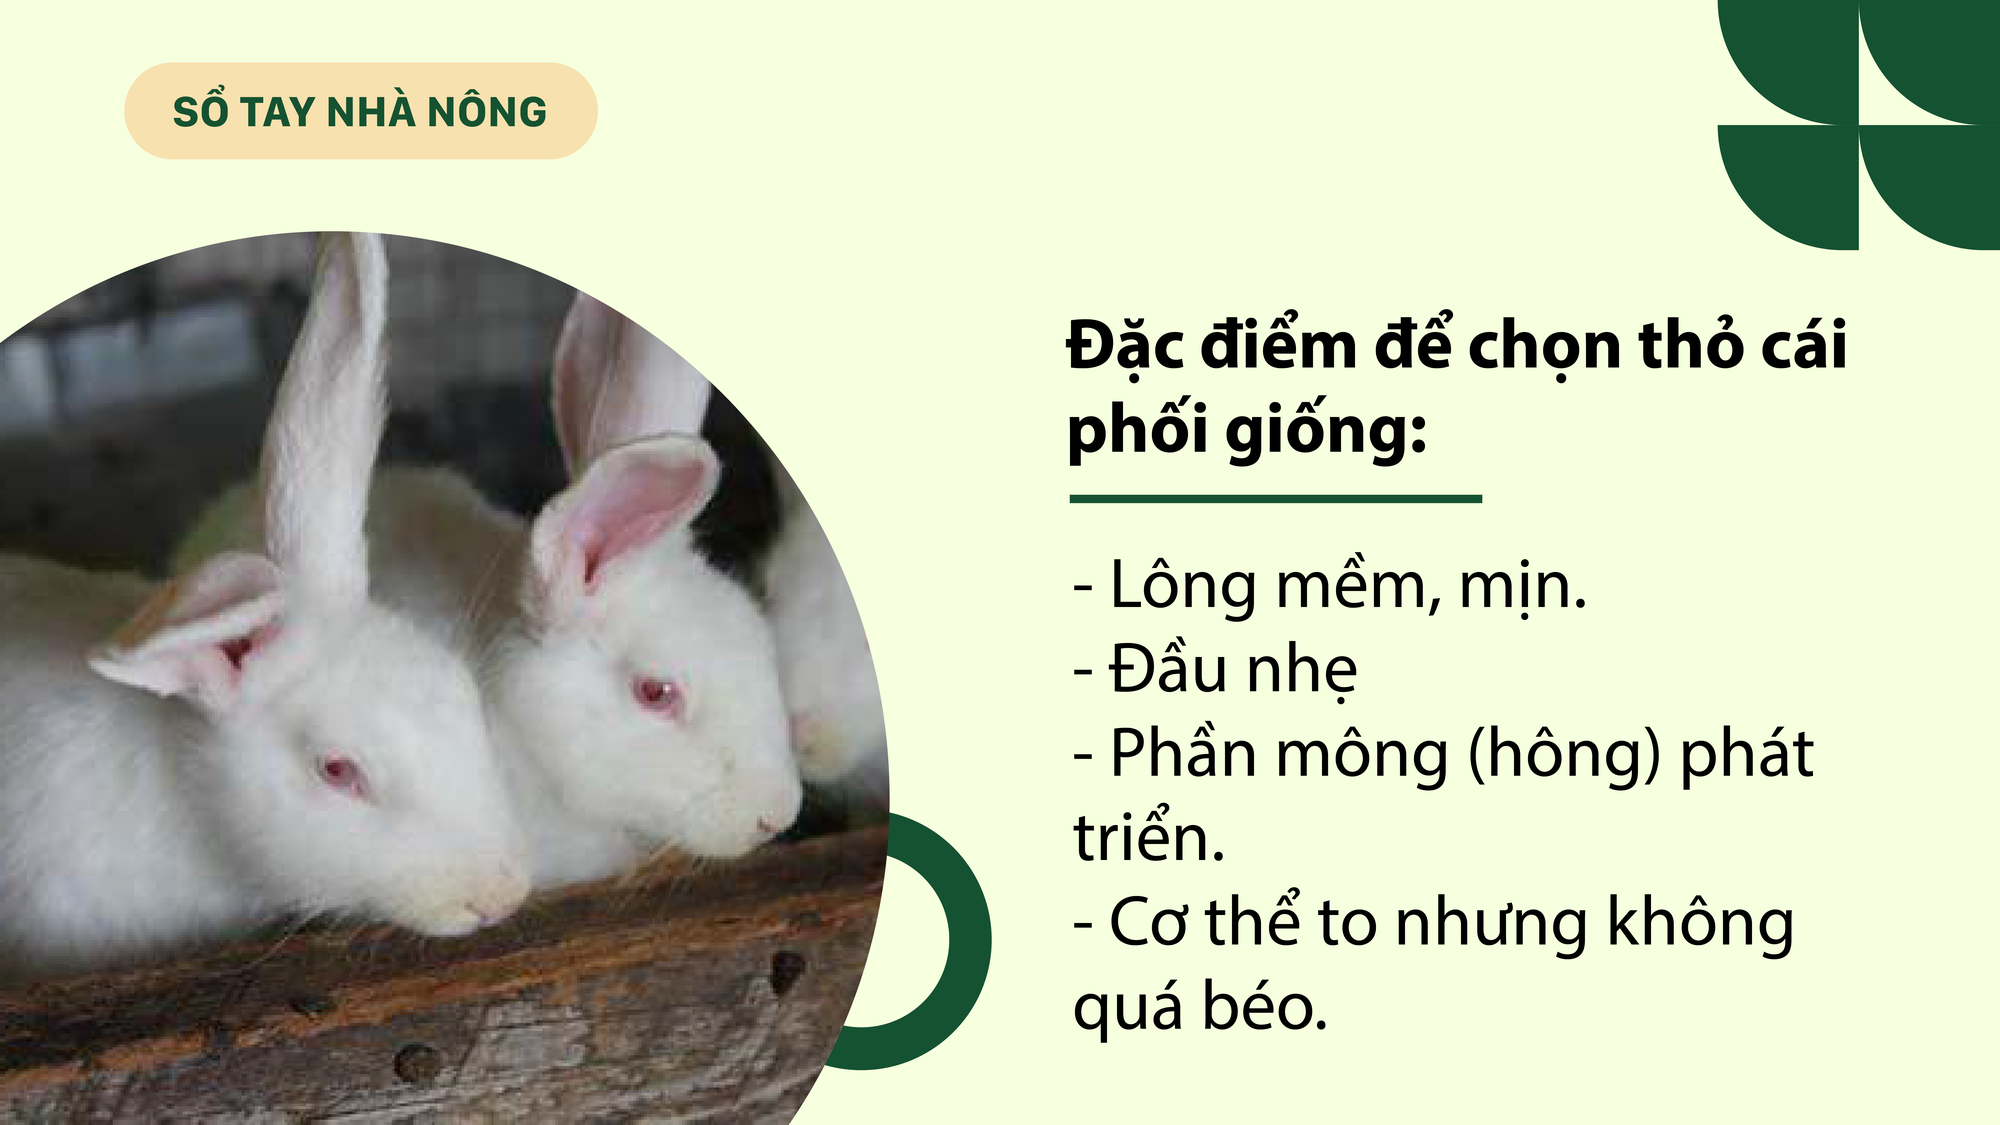 SỔ TAY NHÀ NÔNG: Kỹ thuật chăn nuôi thỏ sinh sản không phải ai cũng biết - Ảnh 2.